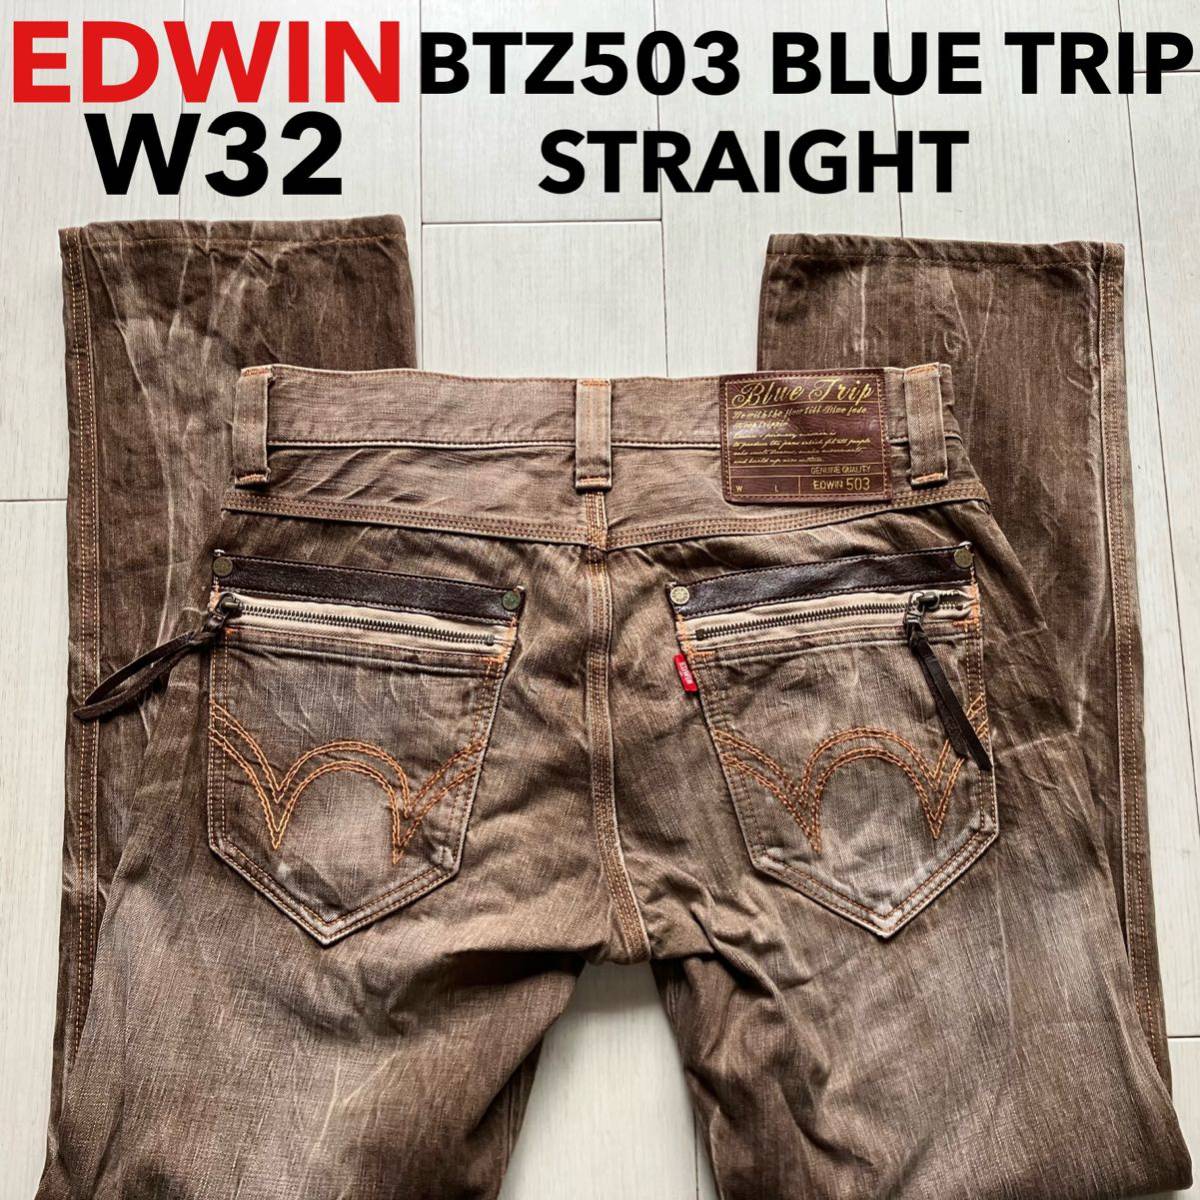  быстрое решение W32 Edwin EDWIN BTZ503 голубой поездка б/у обработка orange стежок цвет джинсы оттенок коричневого чай цвет Zip карман 